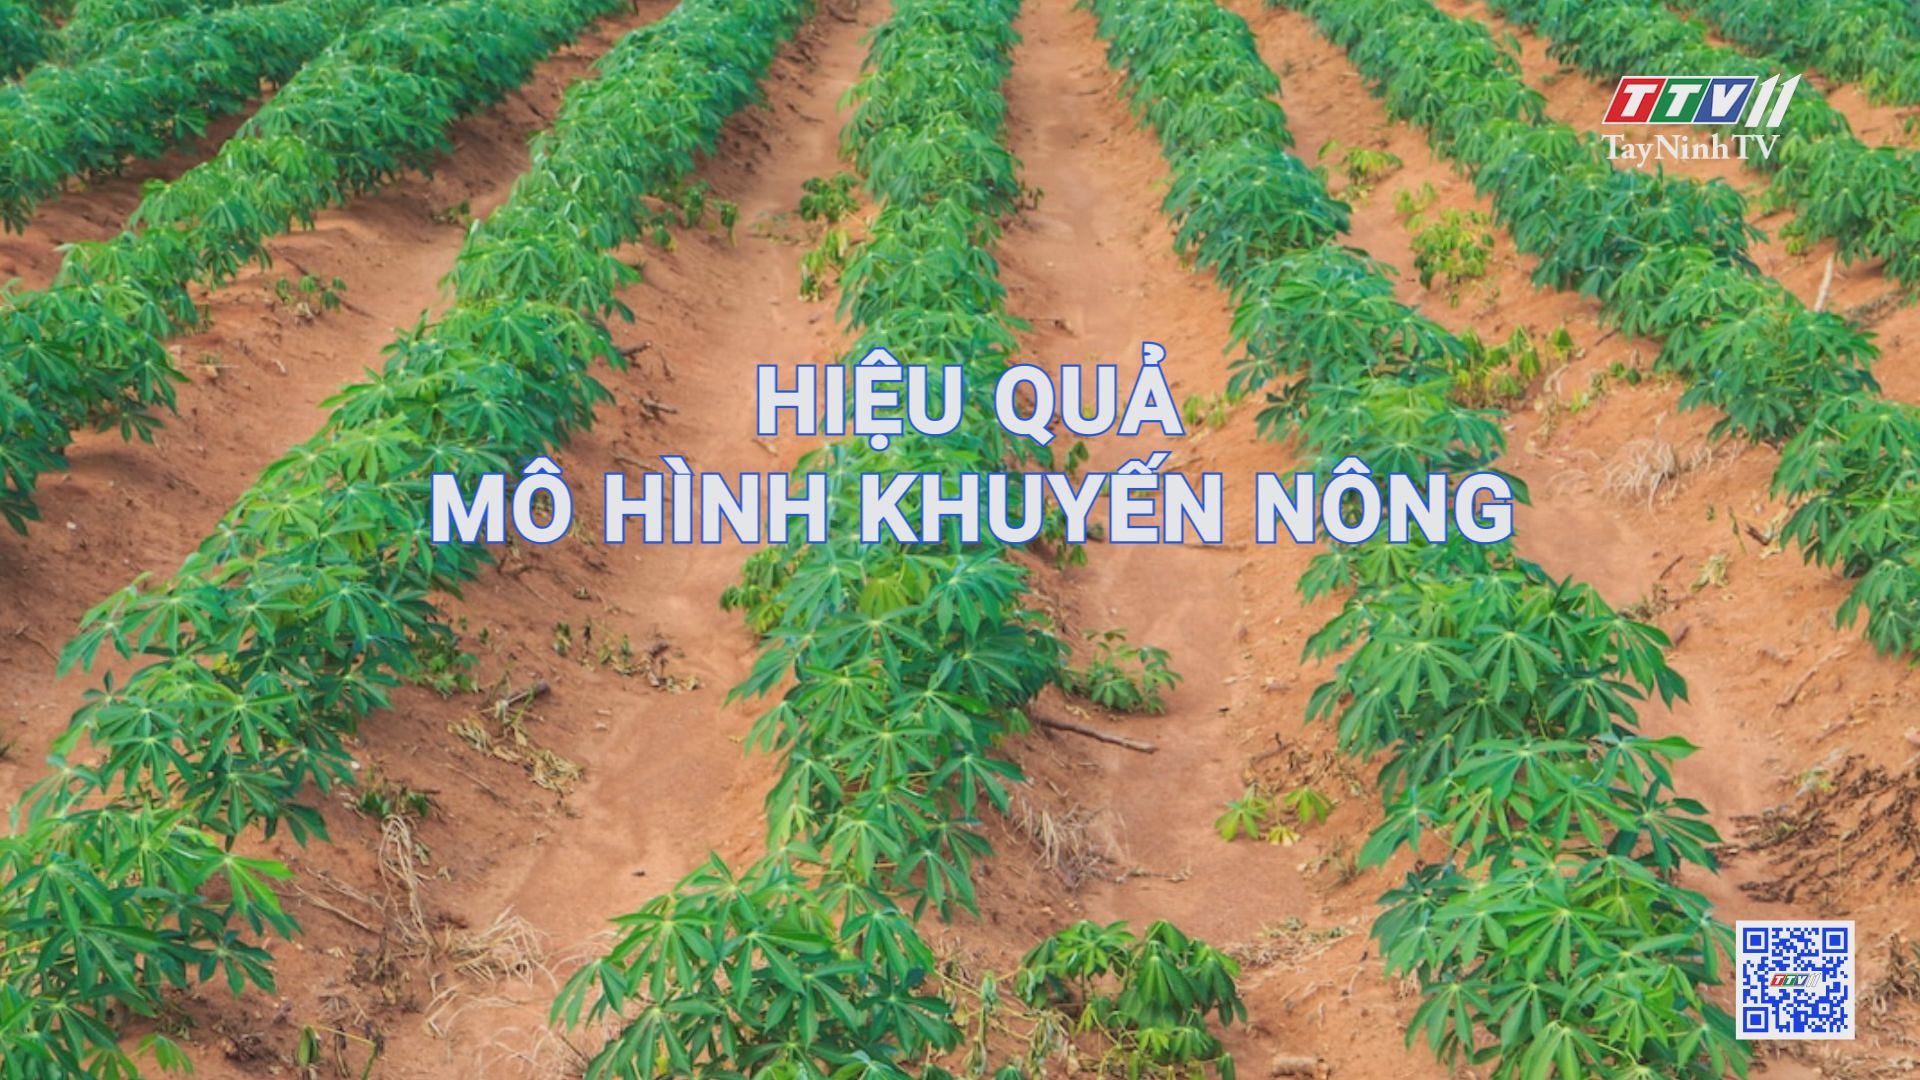 Hiệu quả mô hình khuyến nông | Nông nghiệp Tây Ninh | TayNinhTV